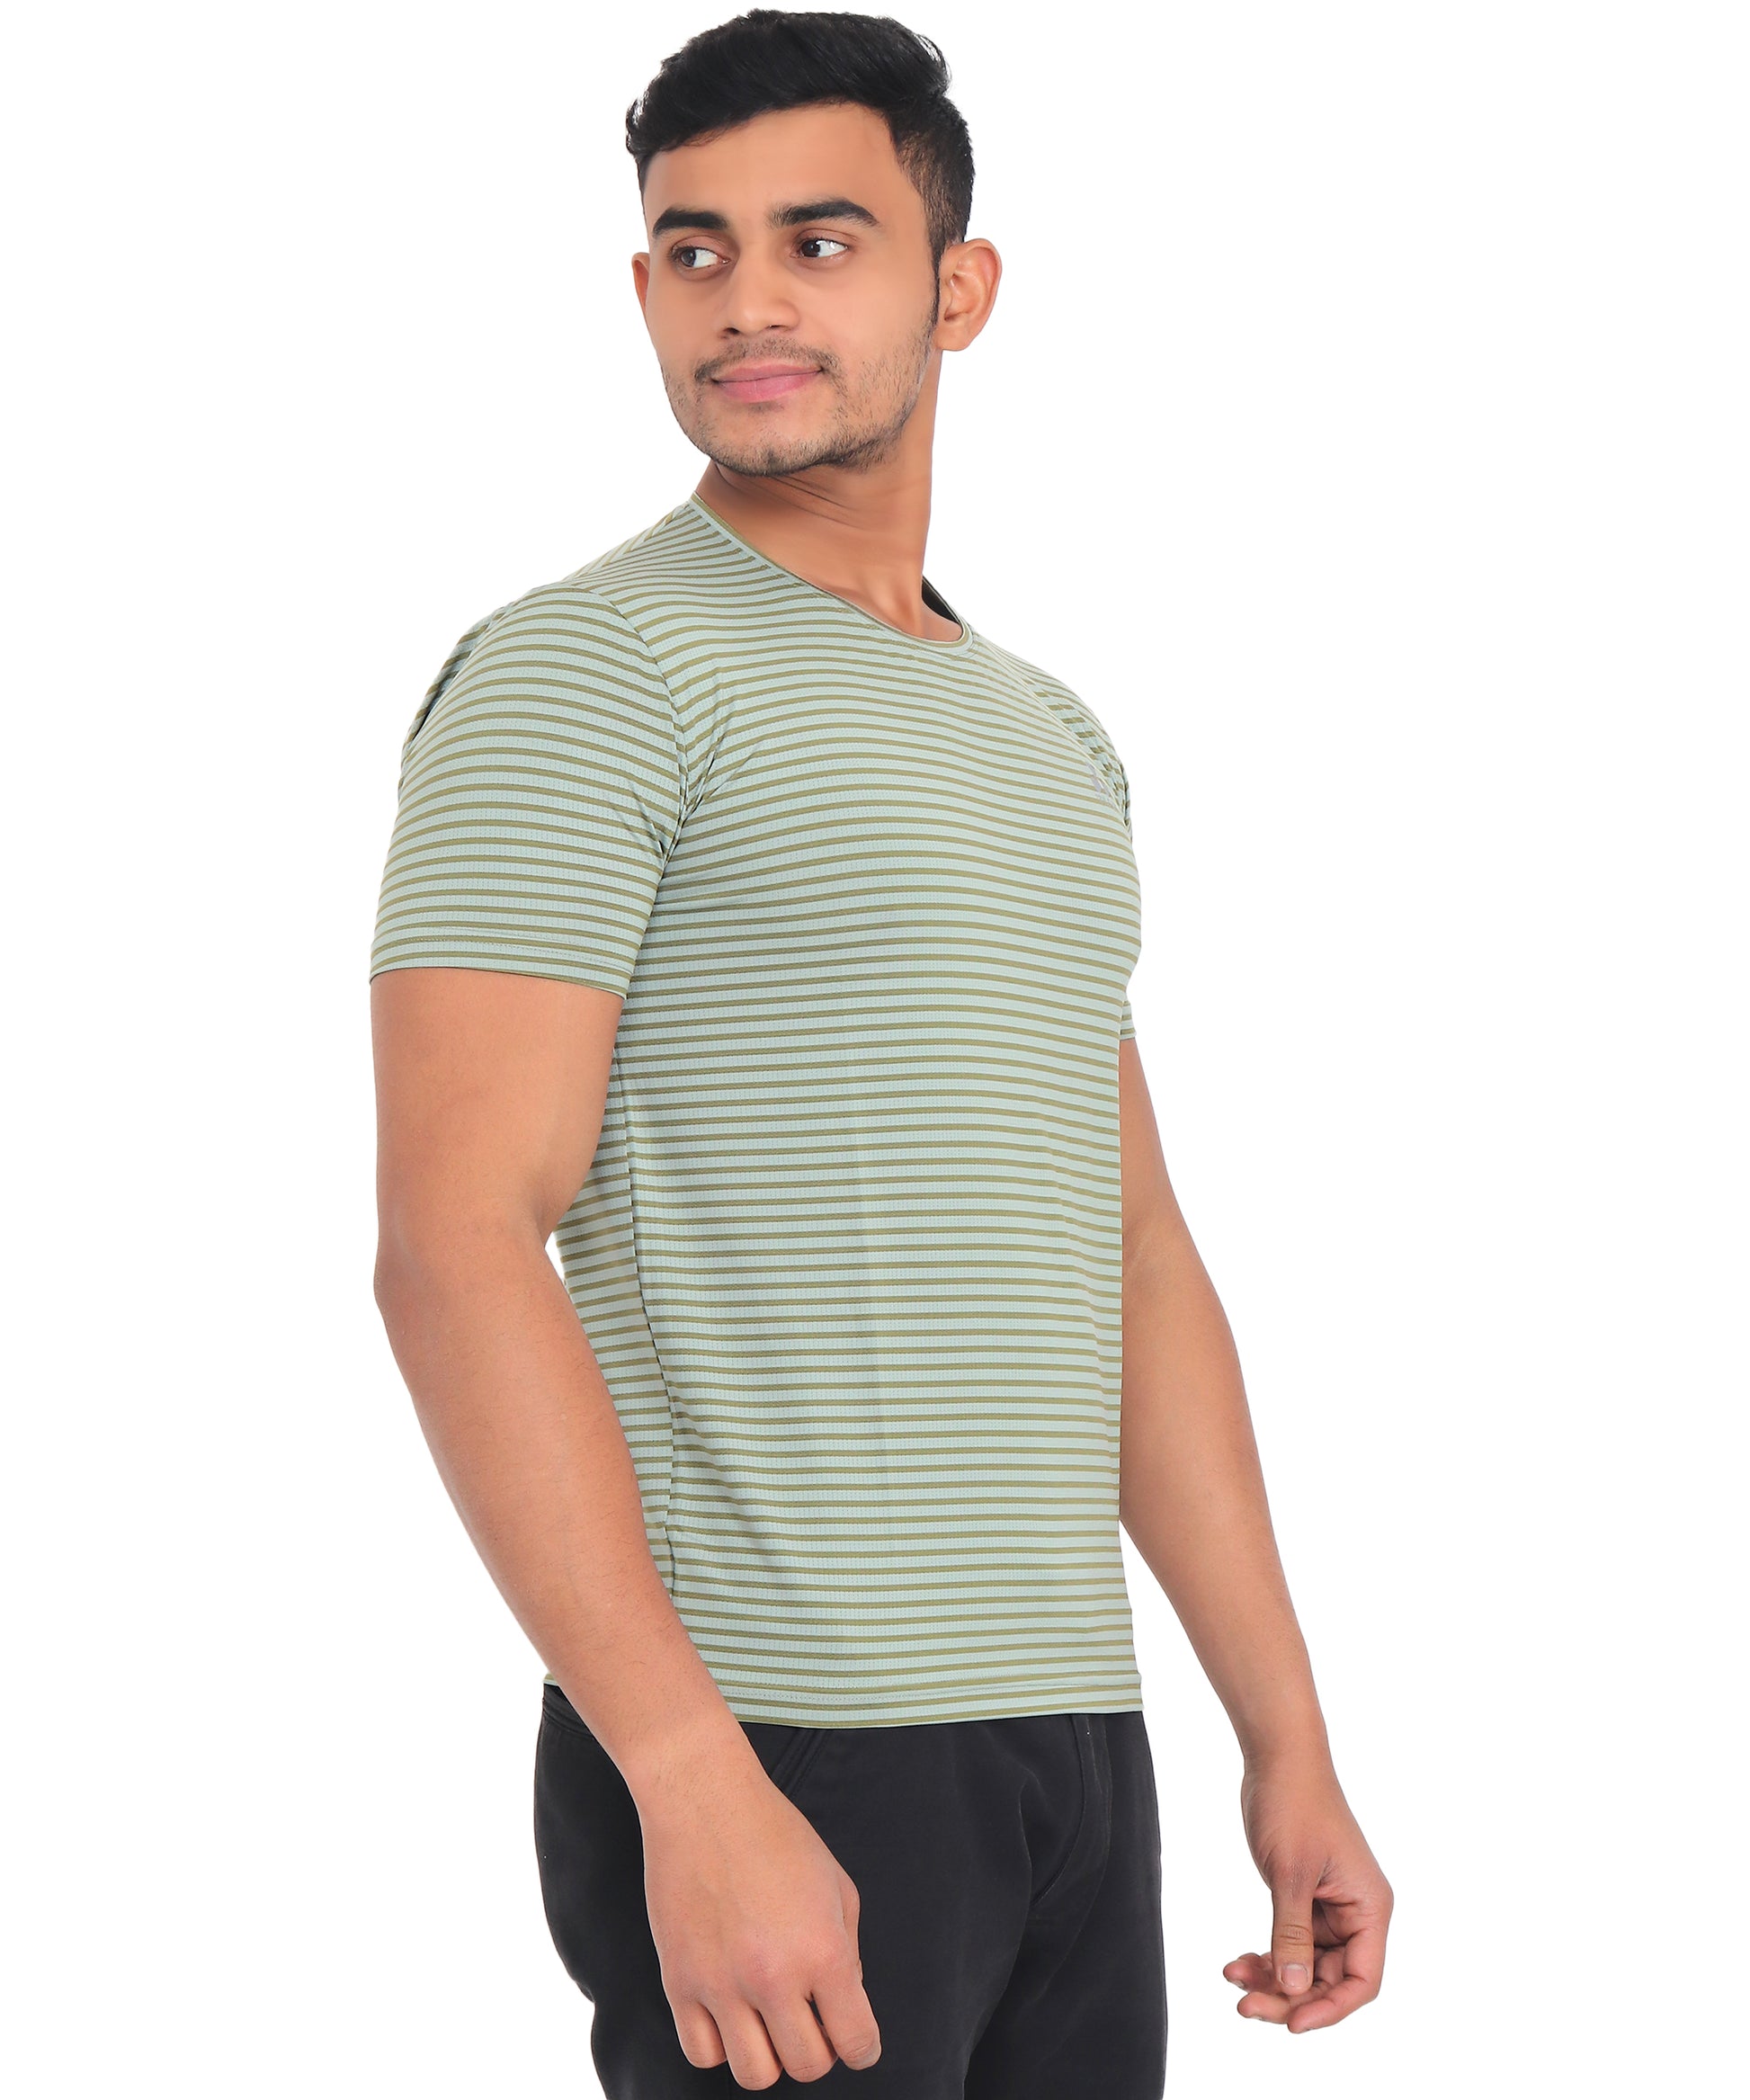 Triple Dot Green Strip Pattern Dri Fit Polyester T shirt for Men - Triple Dot Clothings